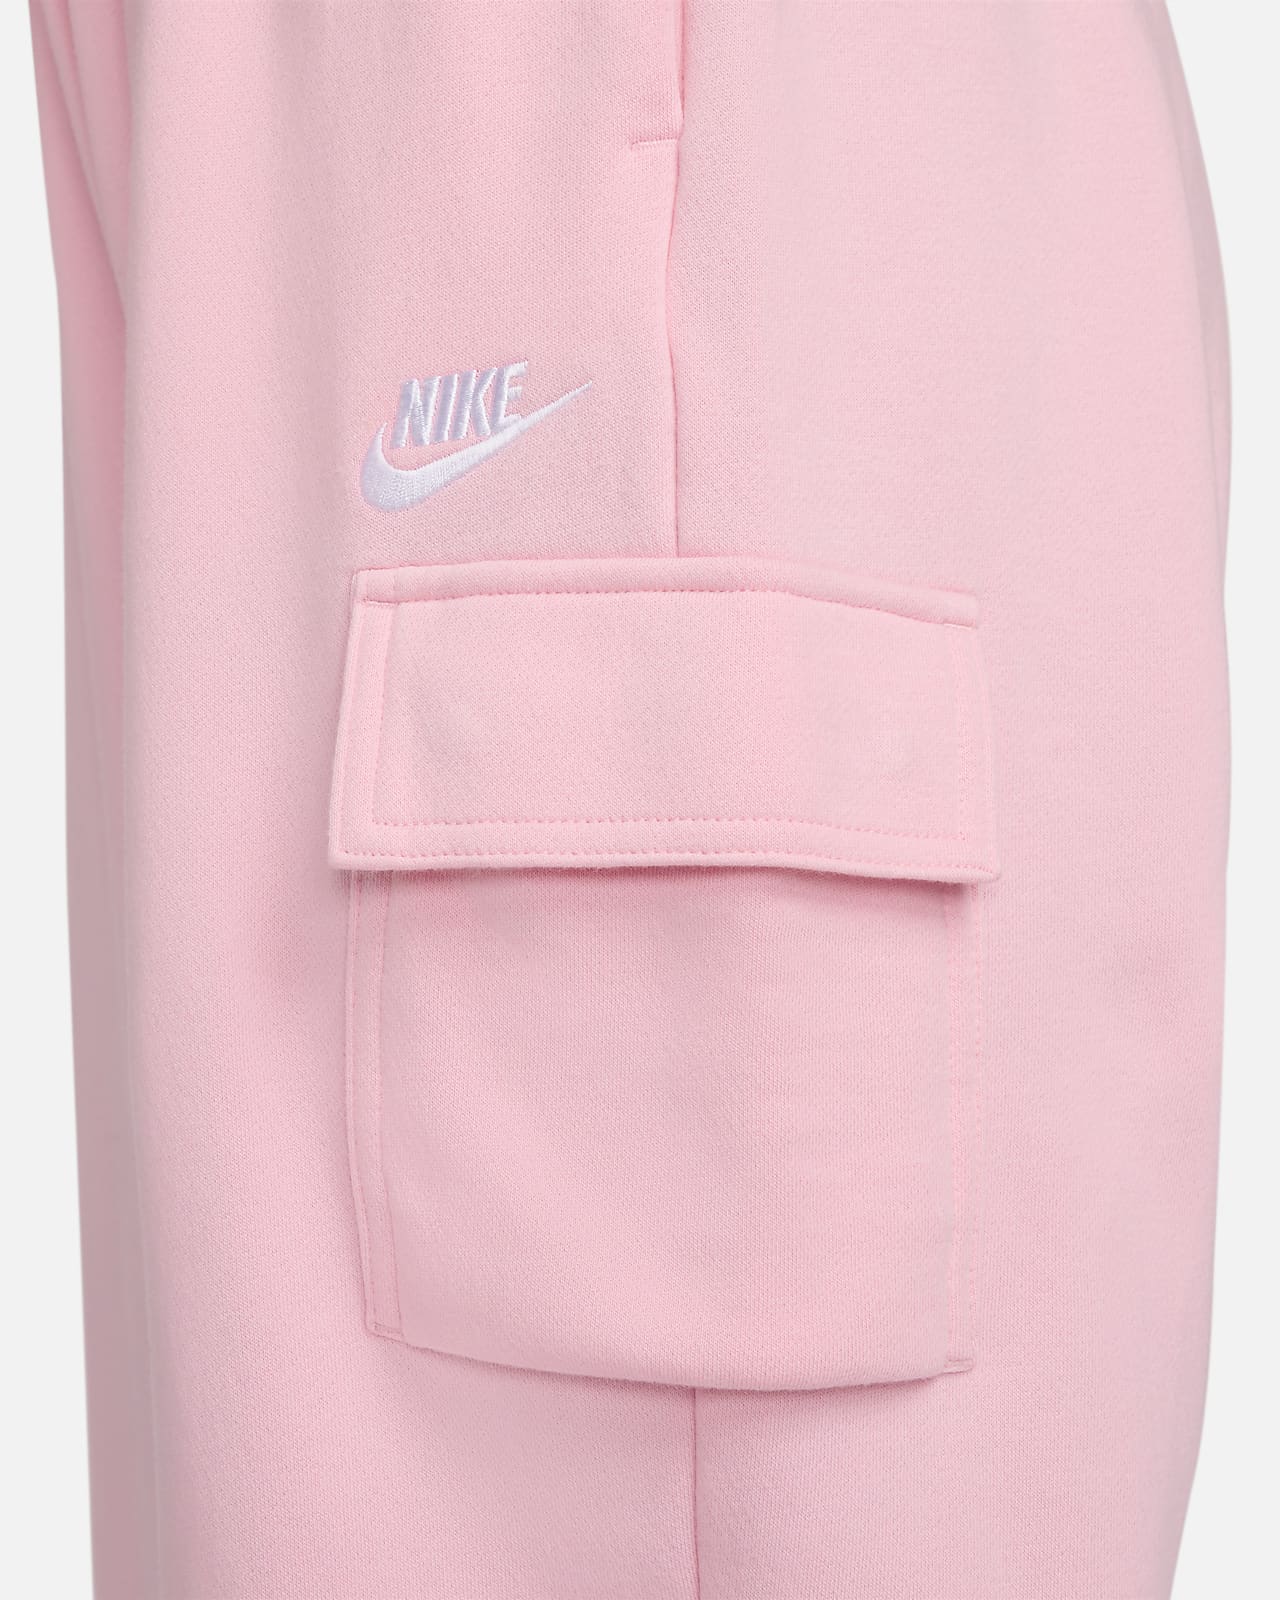 Nike Sweatpants - Club Fleece Pink, Women